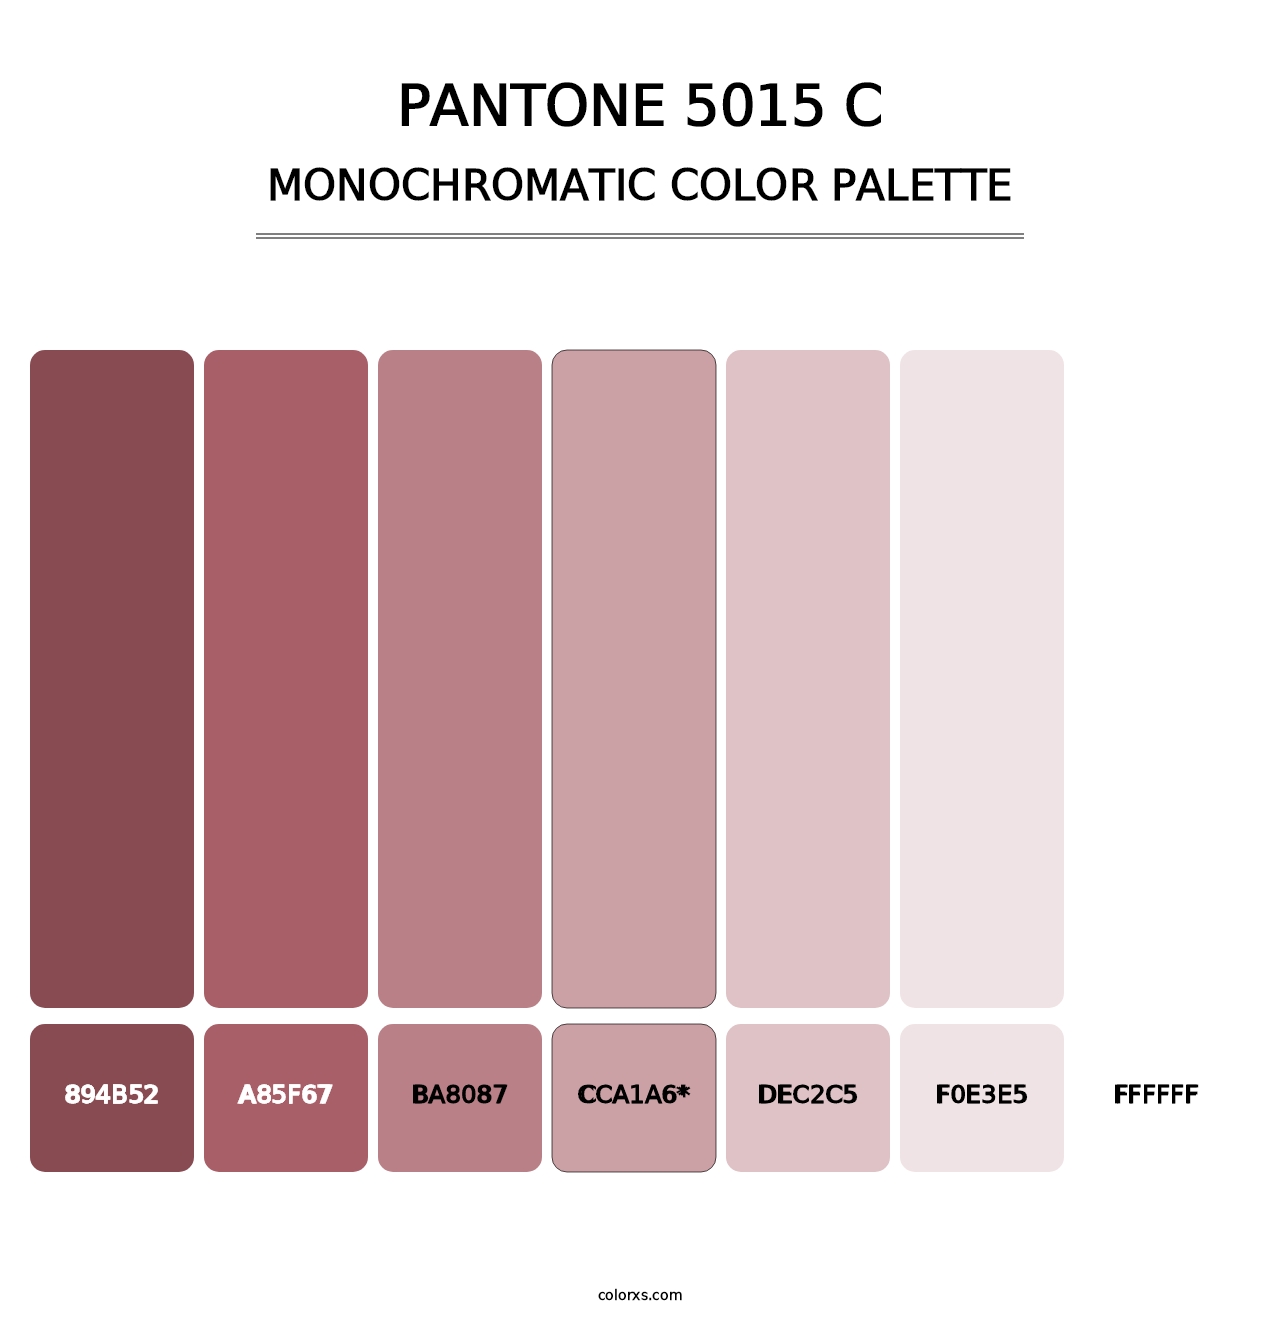 PANTONE 5015 C - Monochromatic Color Palette